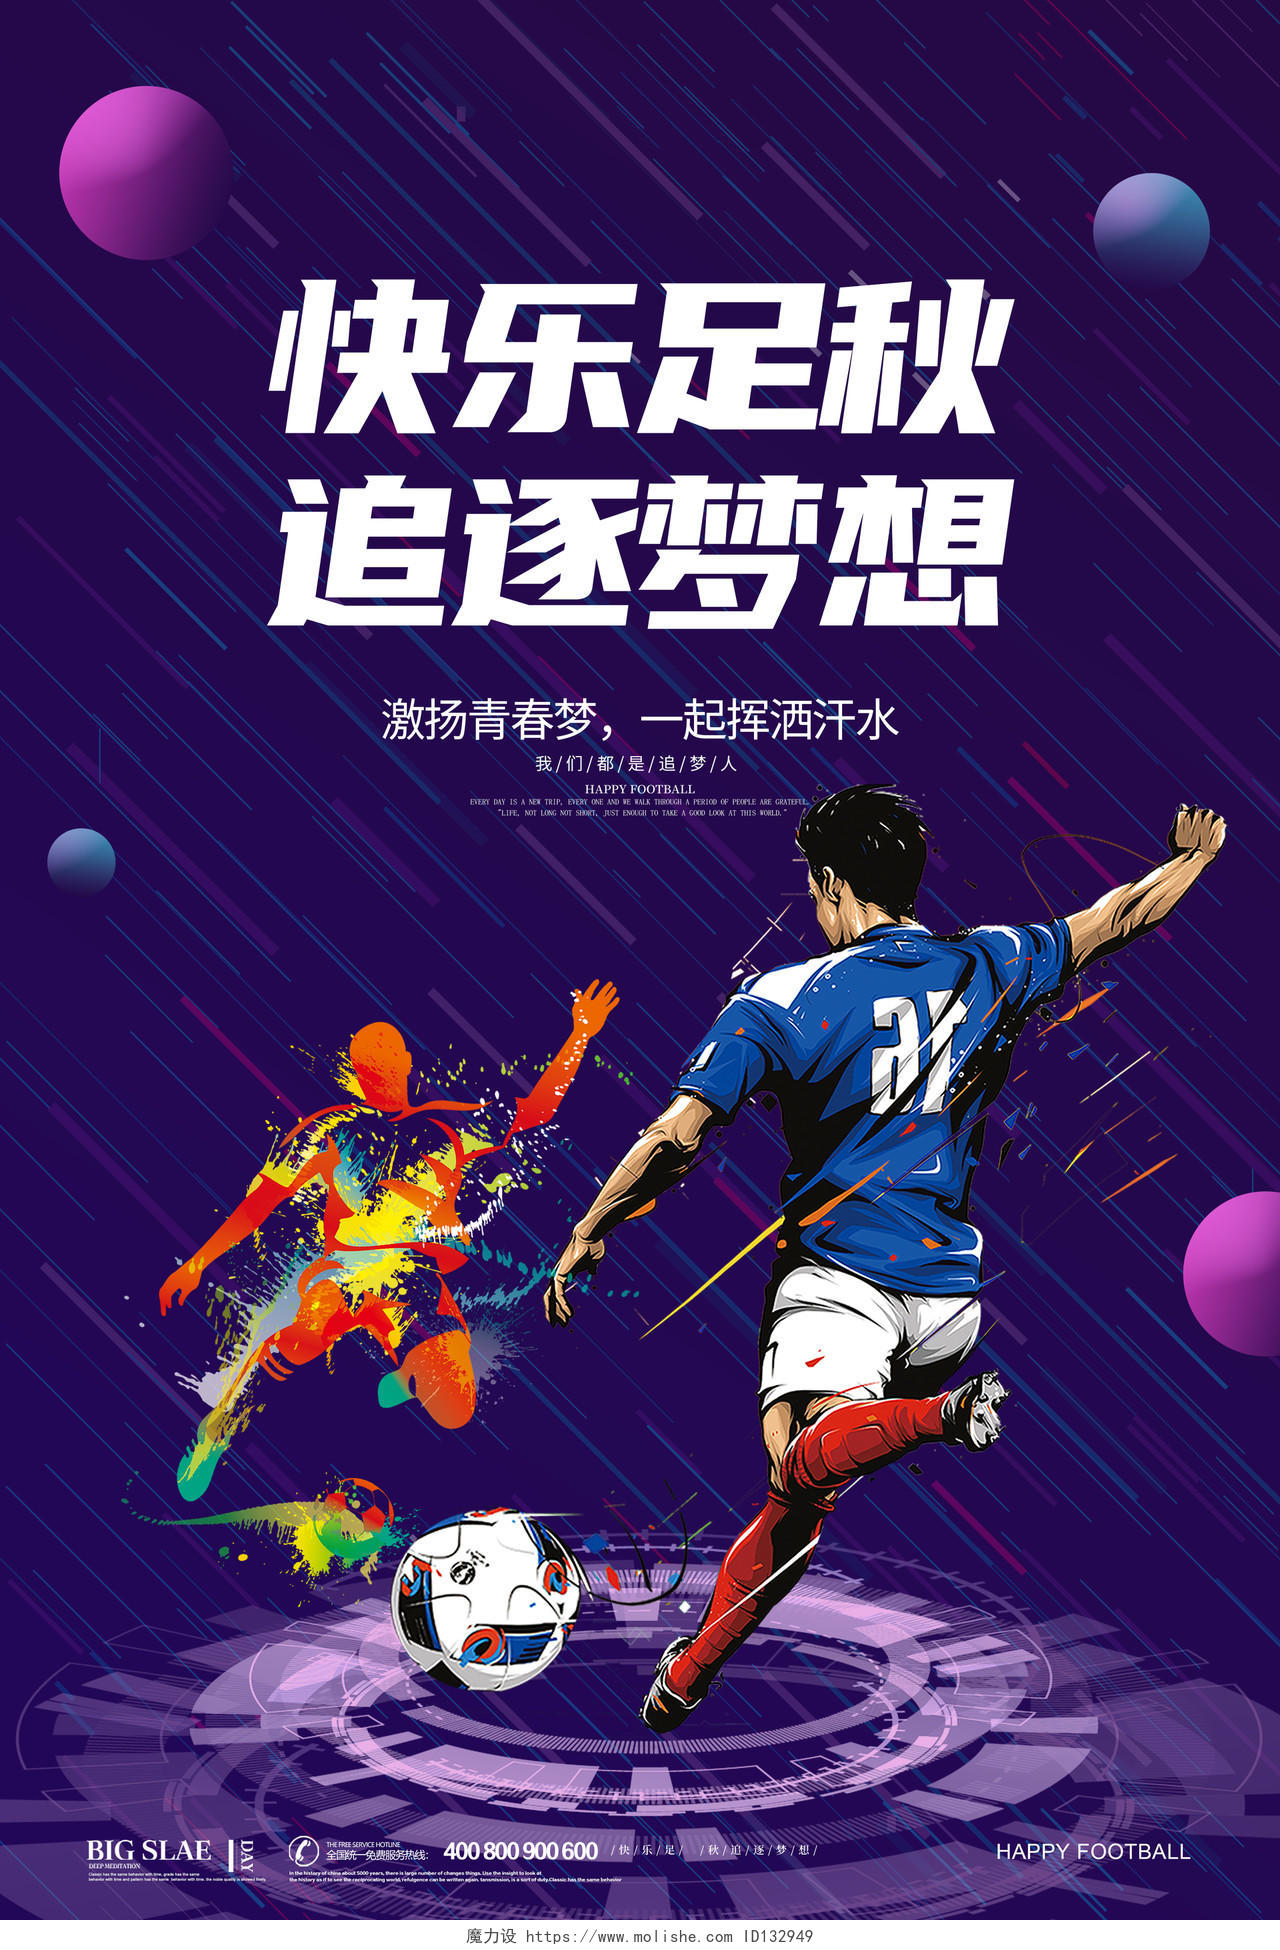 紫色简约大气炫彩科技足球快乐足球追逐梦想足球宣传海报设计